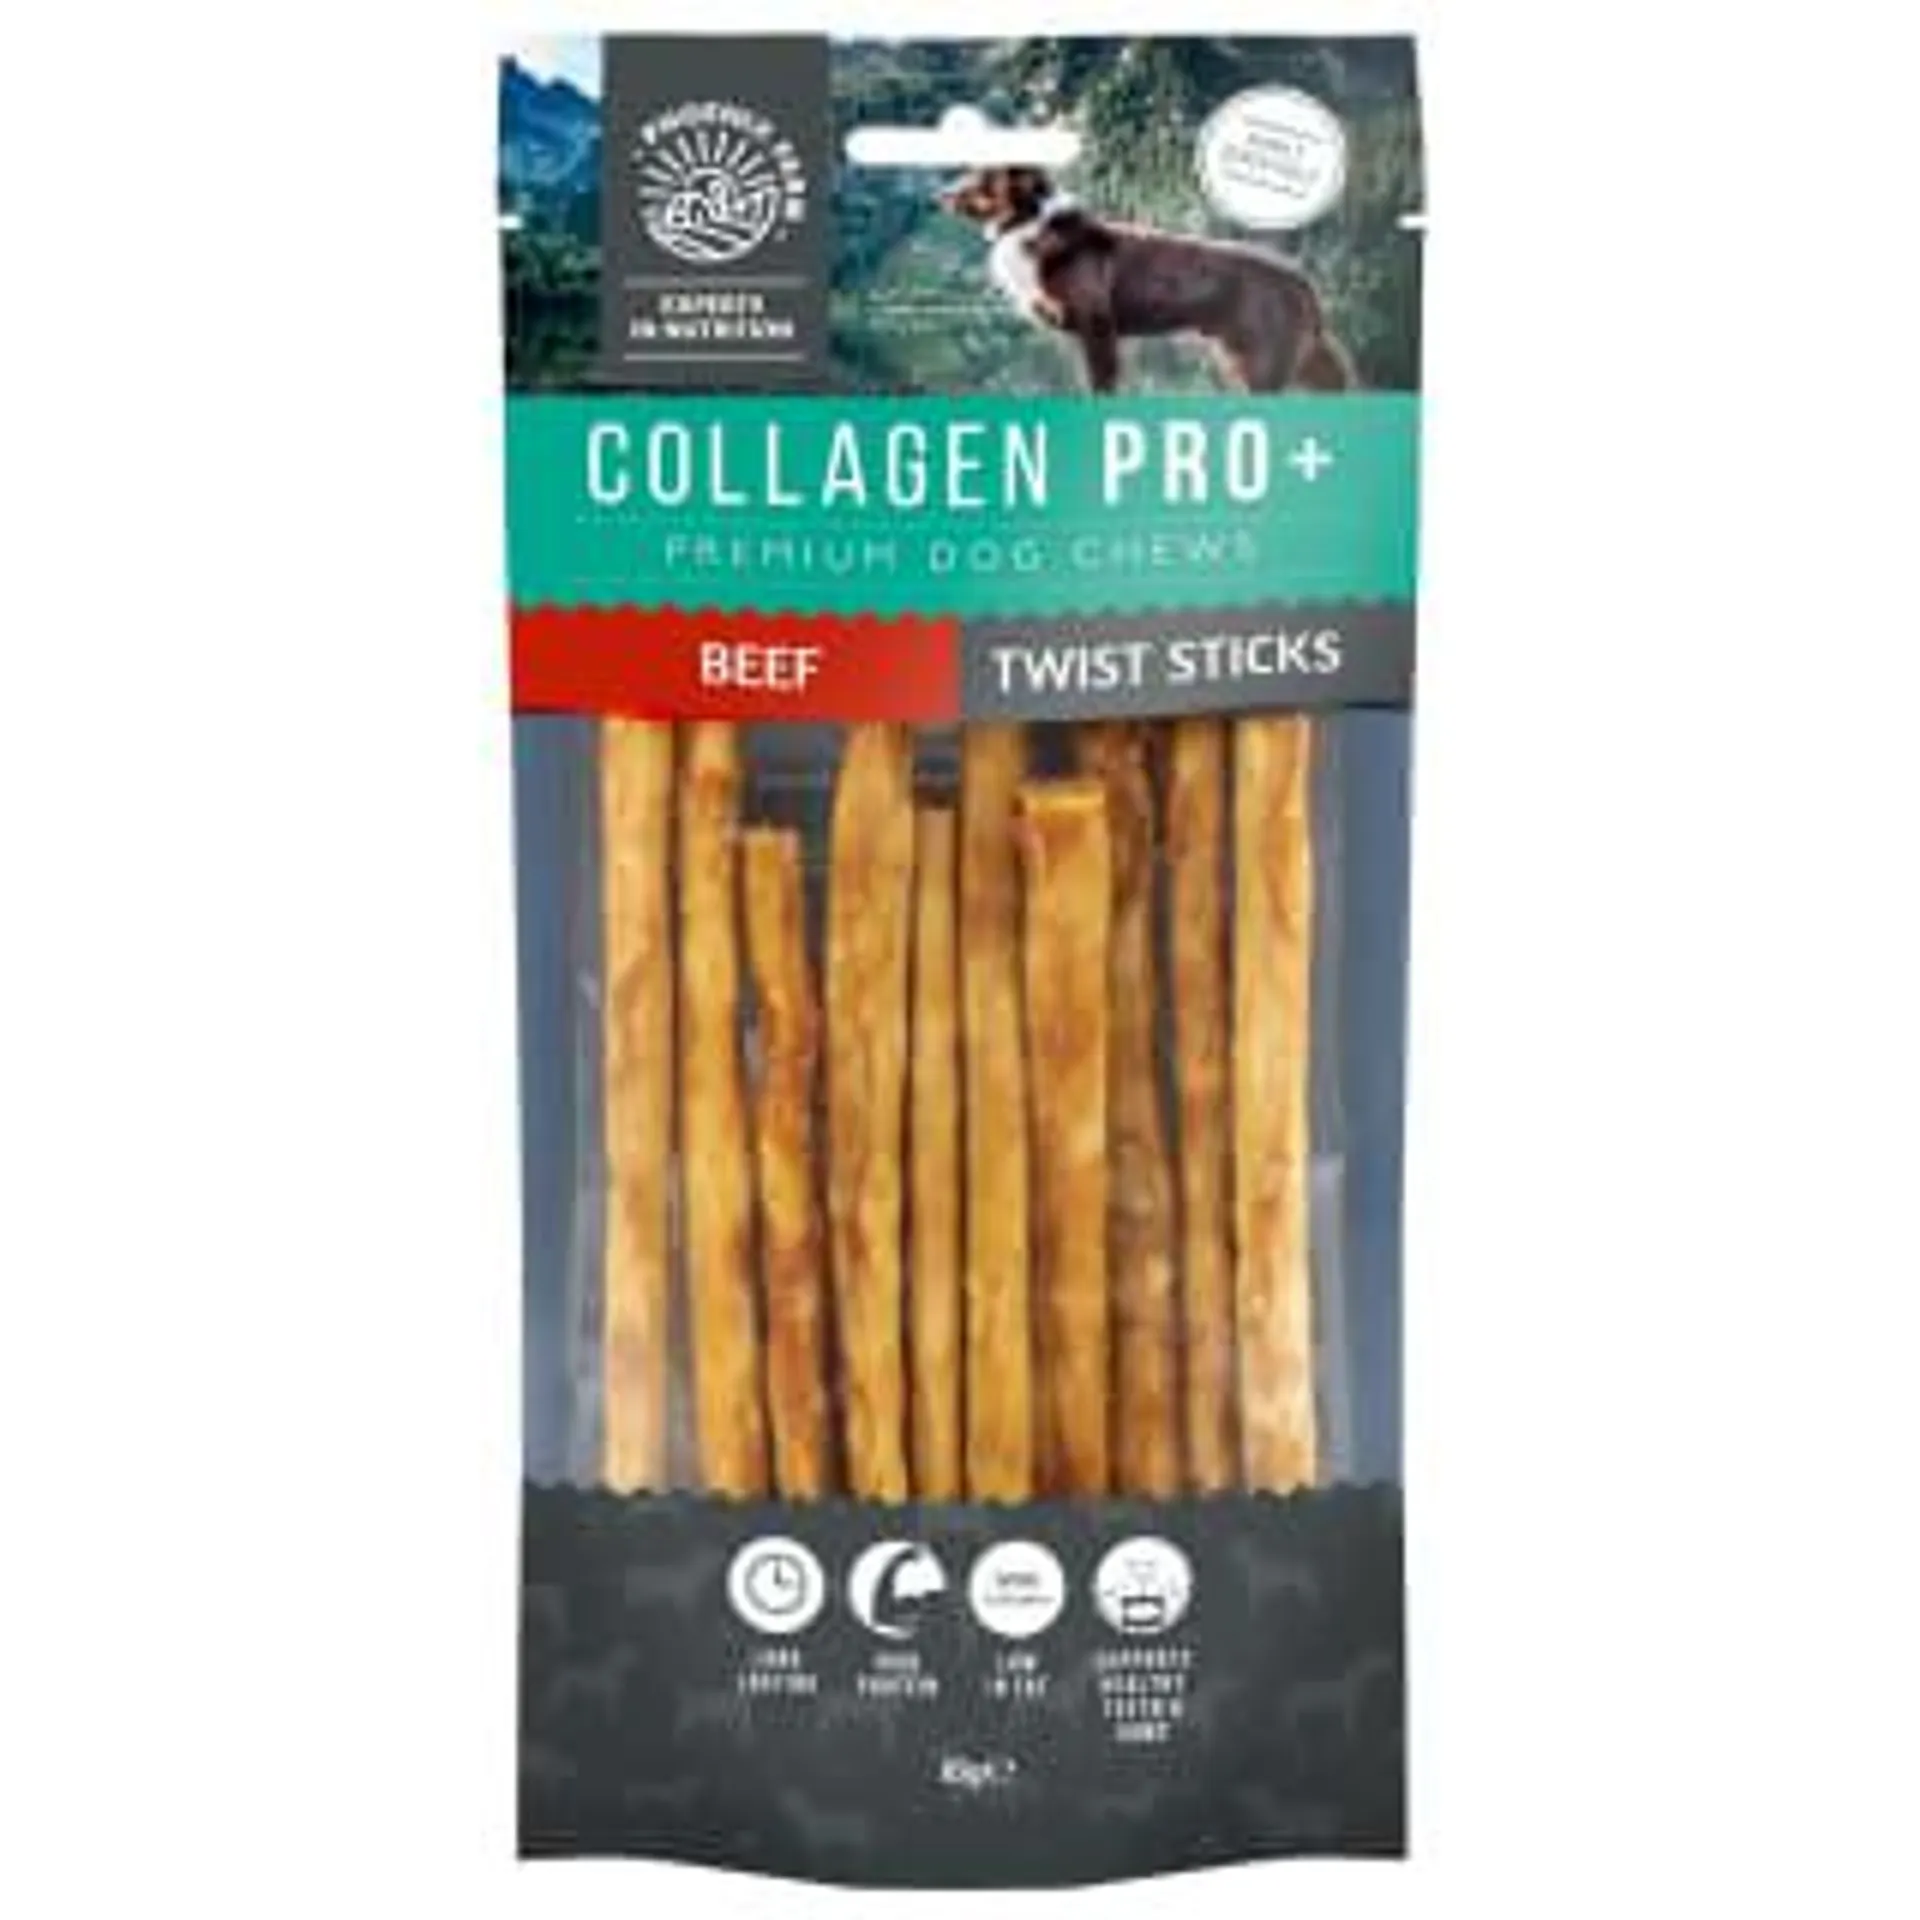 Collagen Pro+ Dog Chews 10pk - Beef Twist Sticks